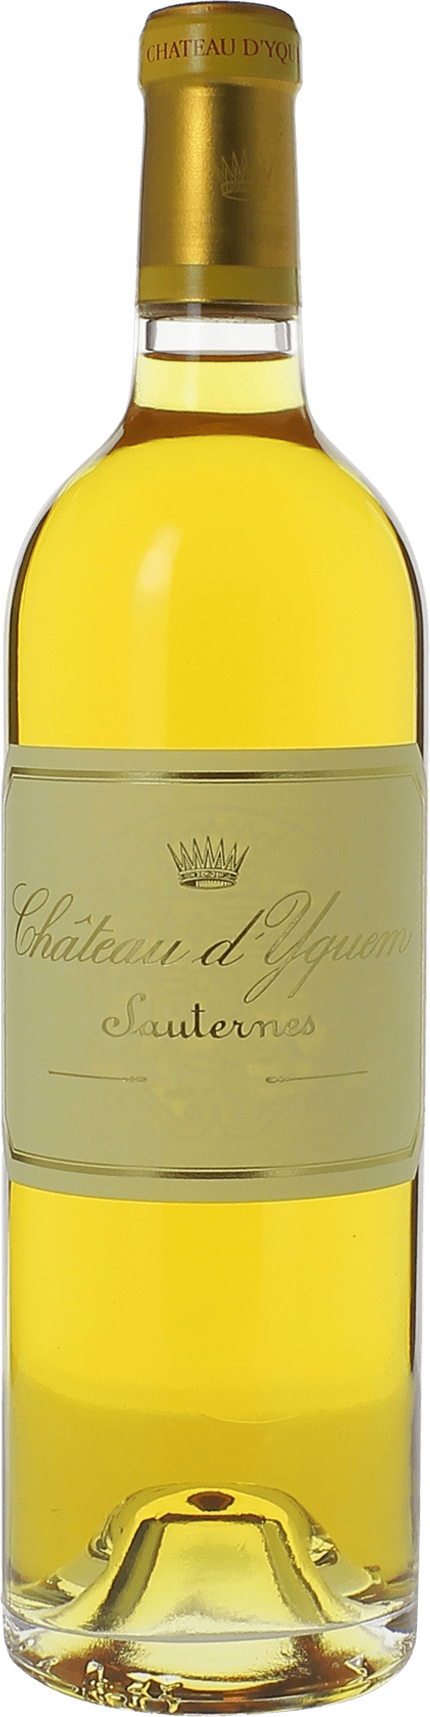 Yquem (disponible dbut fvrier) 1937 1er Grand cru class Sauternes, Bordeaux blanc